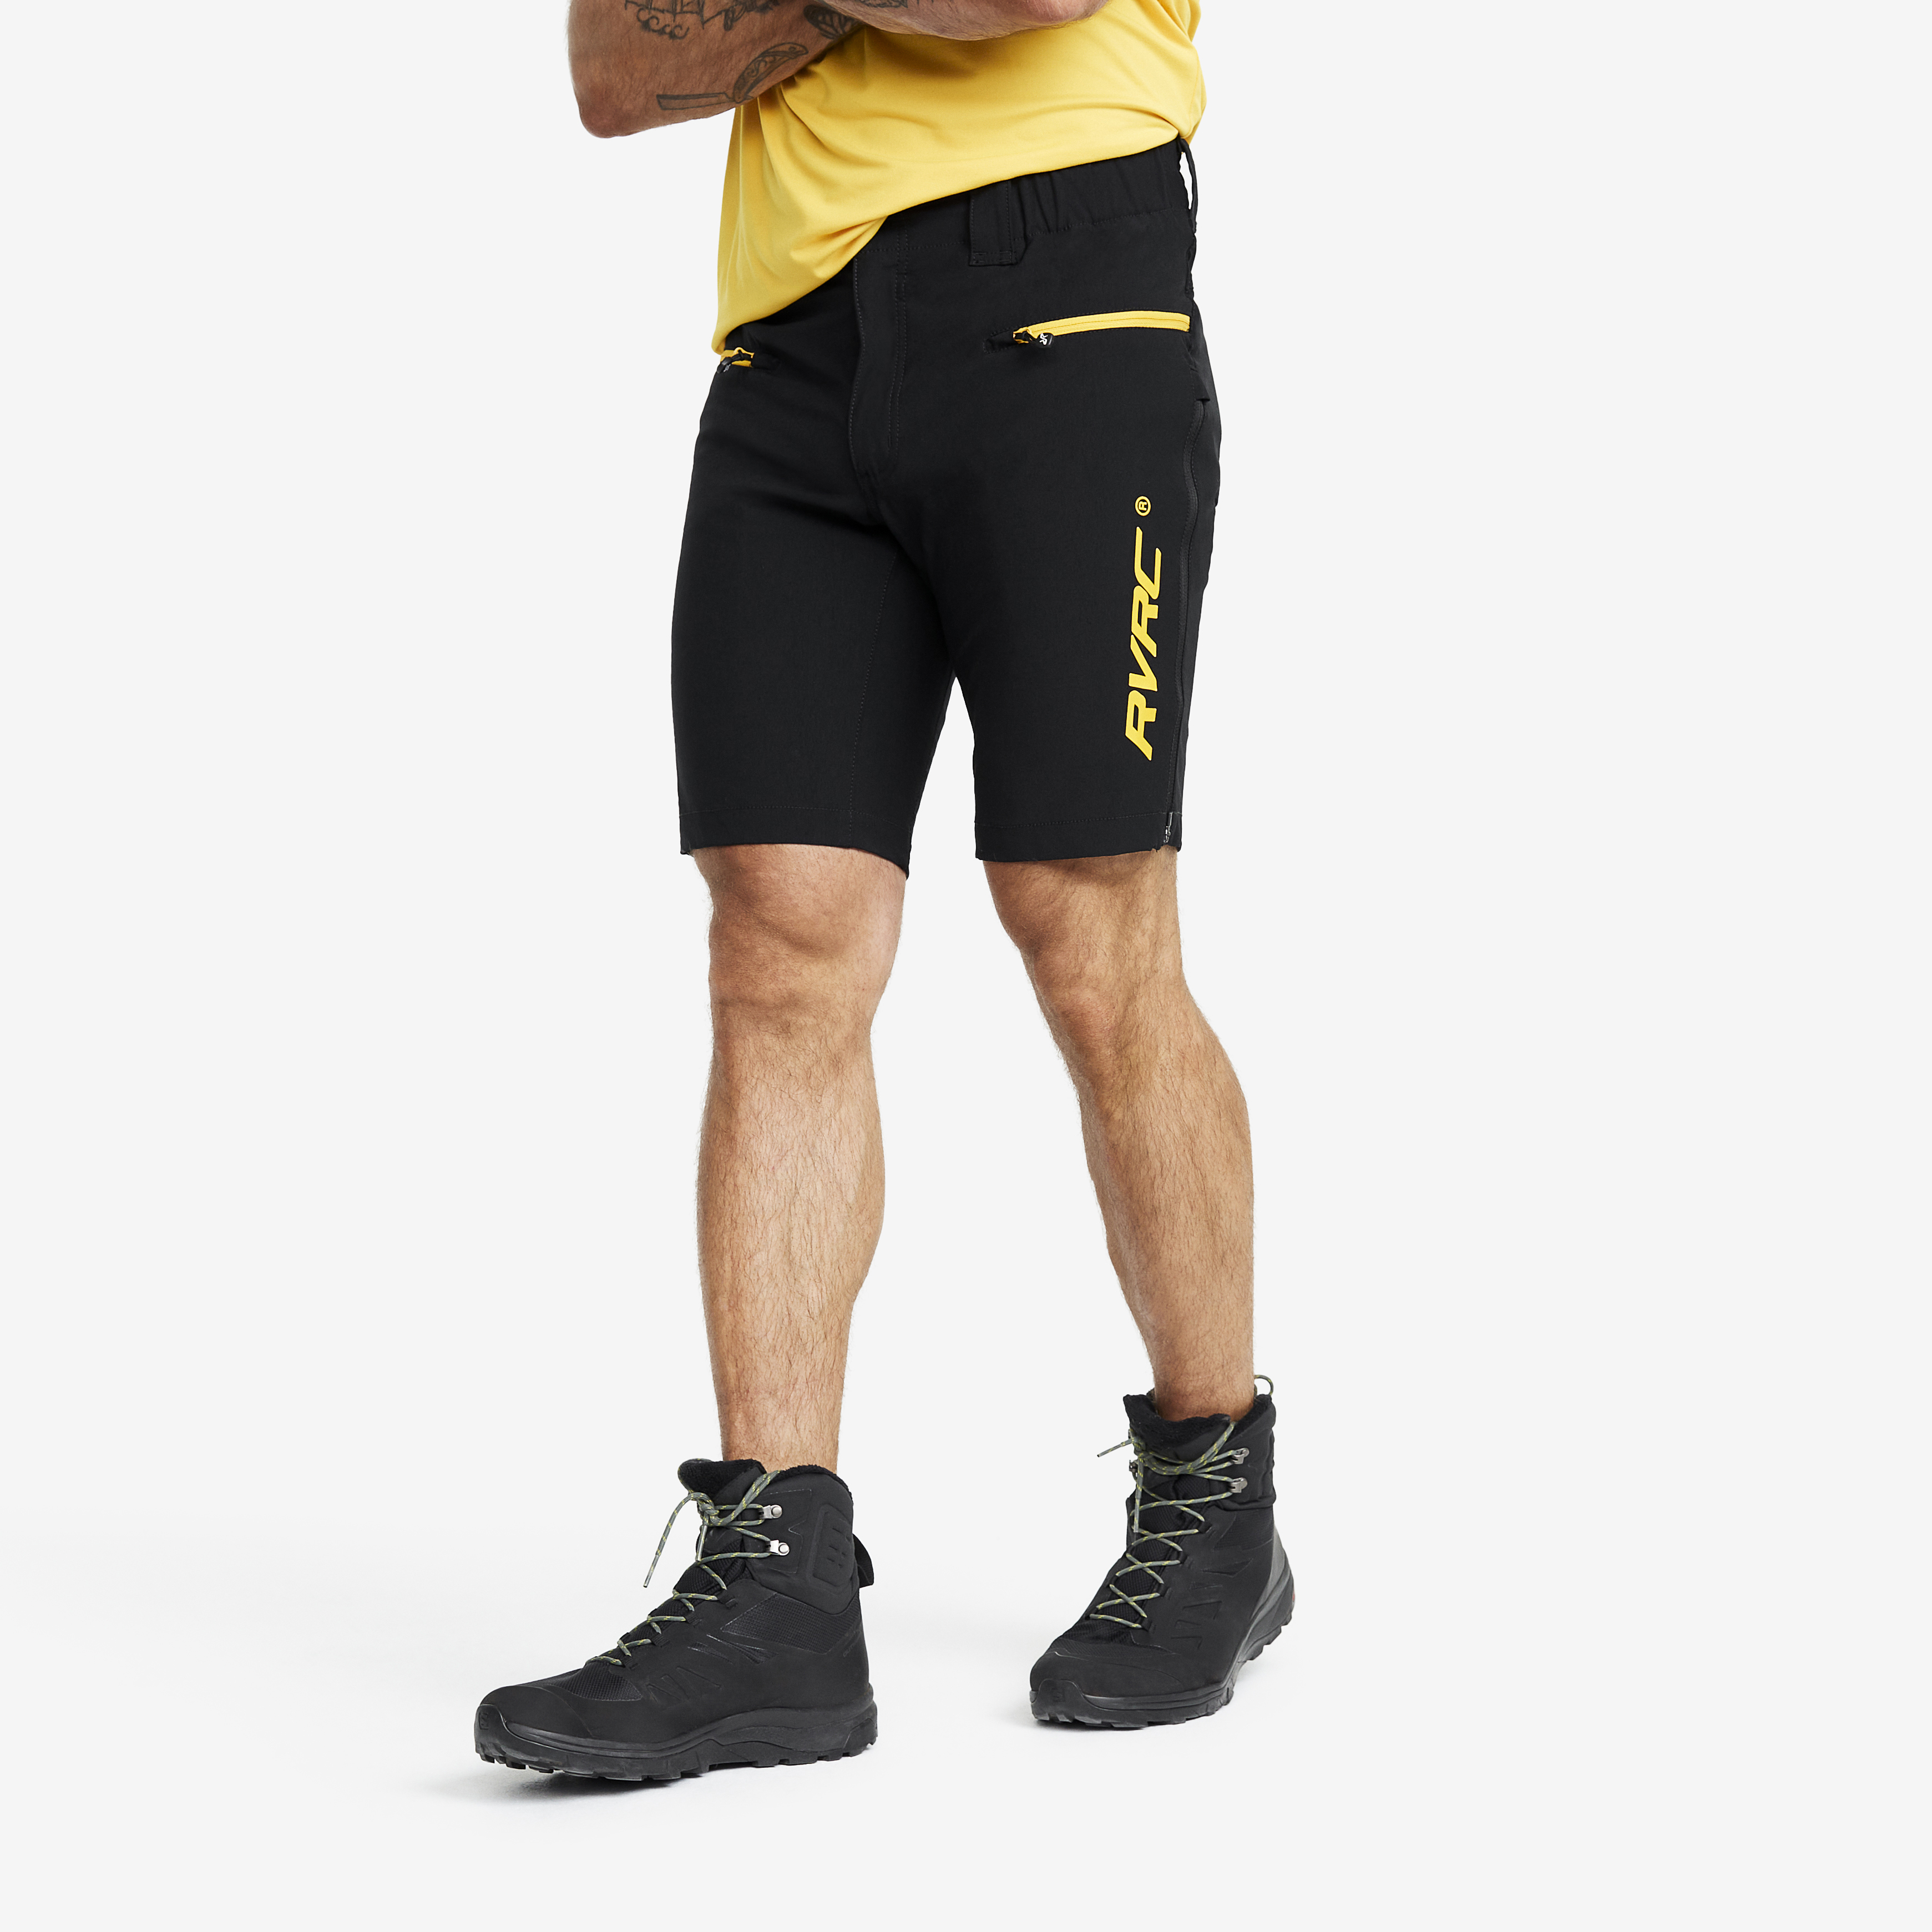 Trail Pro Shorts – Herr – Black/Yellow Storlek:M – Byxor > Shorts